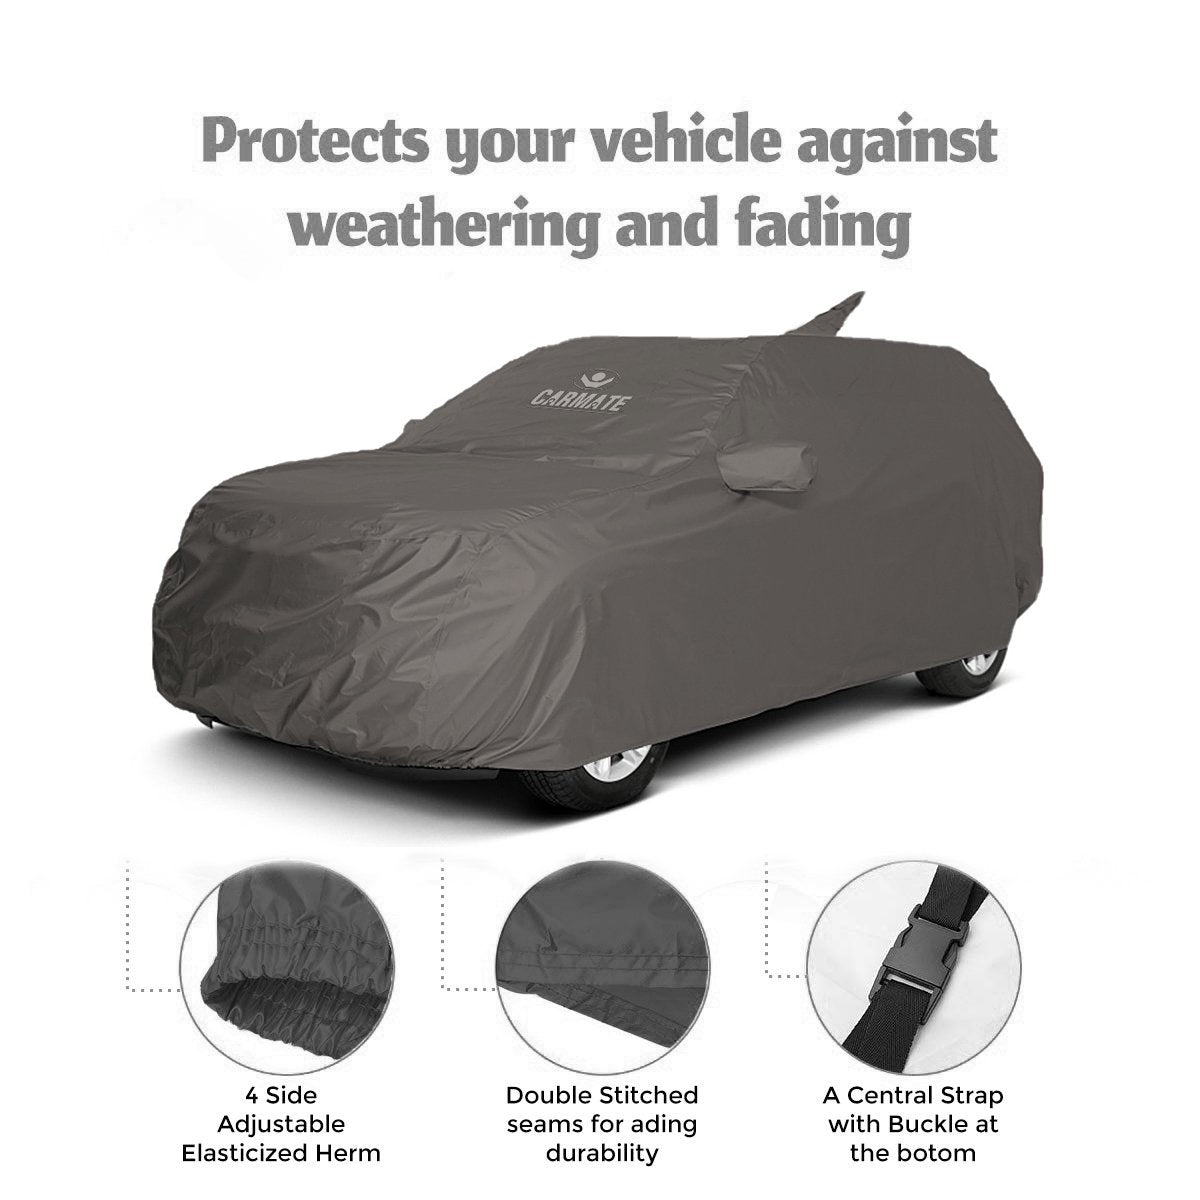 Carmate Car Body Cover 100% Waterproof Pride (Grey) for Maruti - S Cross - CARMATE®